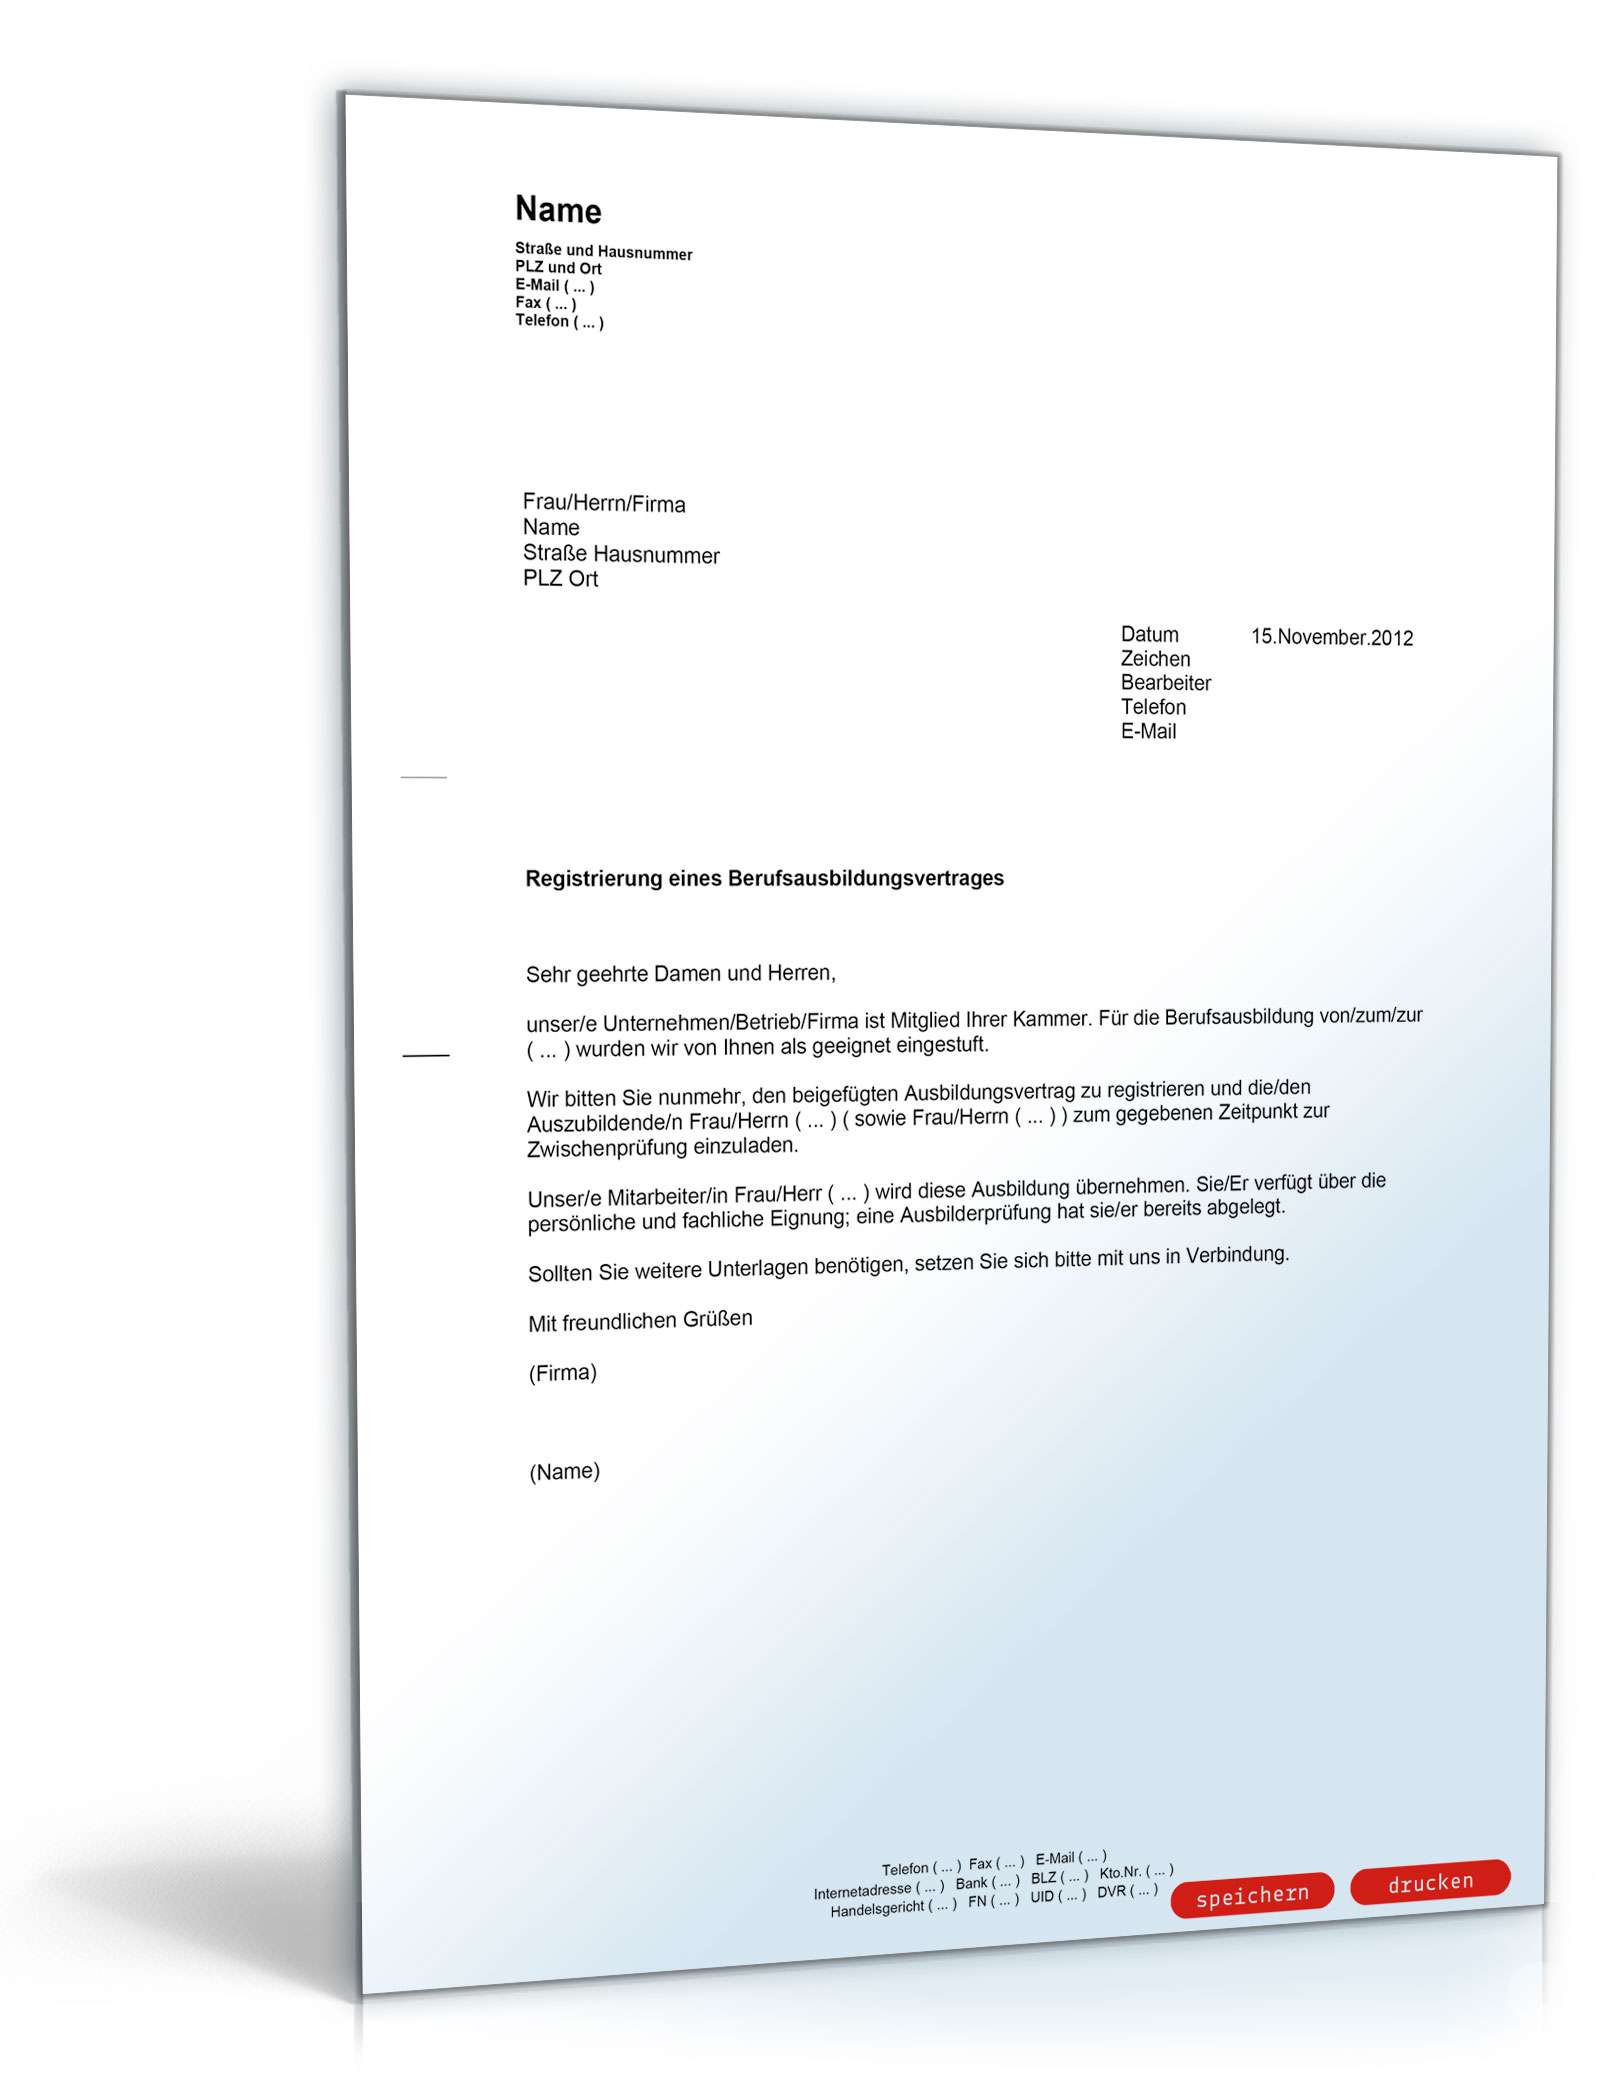 Hauptbild des Produkts: Anmeldung eines Berufsausbildungsvertrages bei der deutschen Handwerkskammer